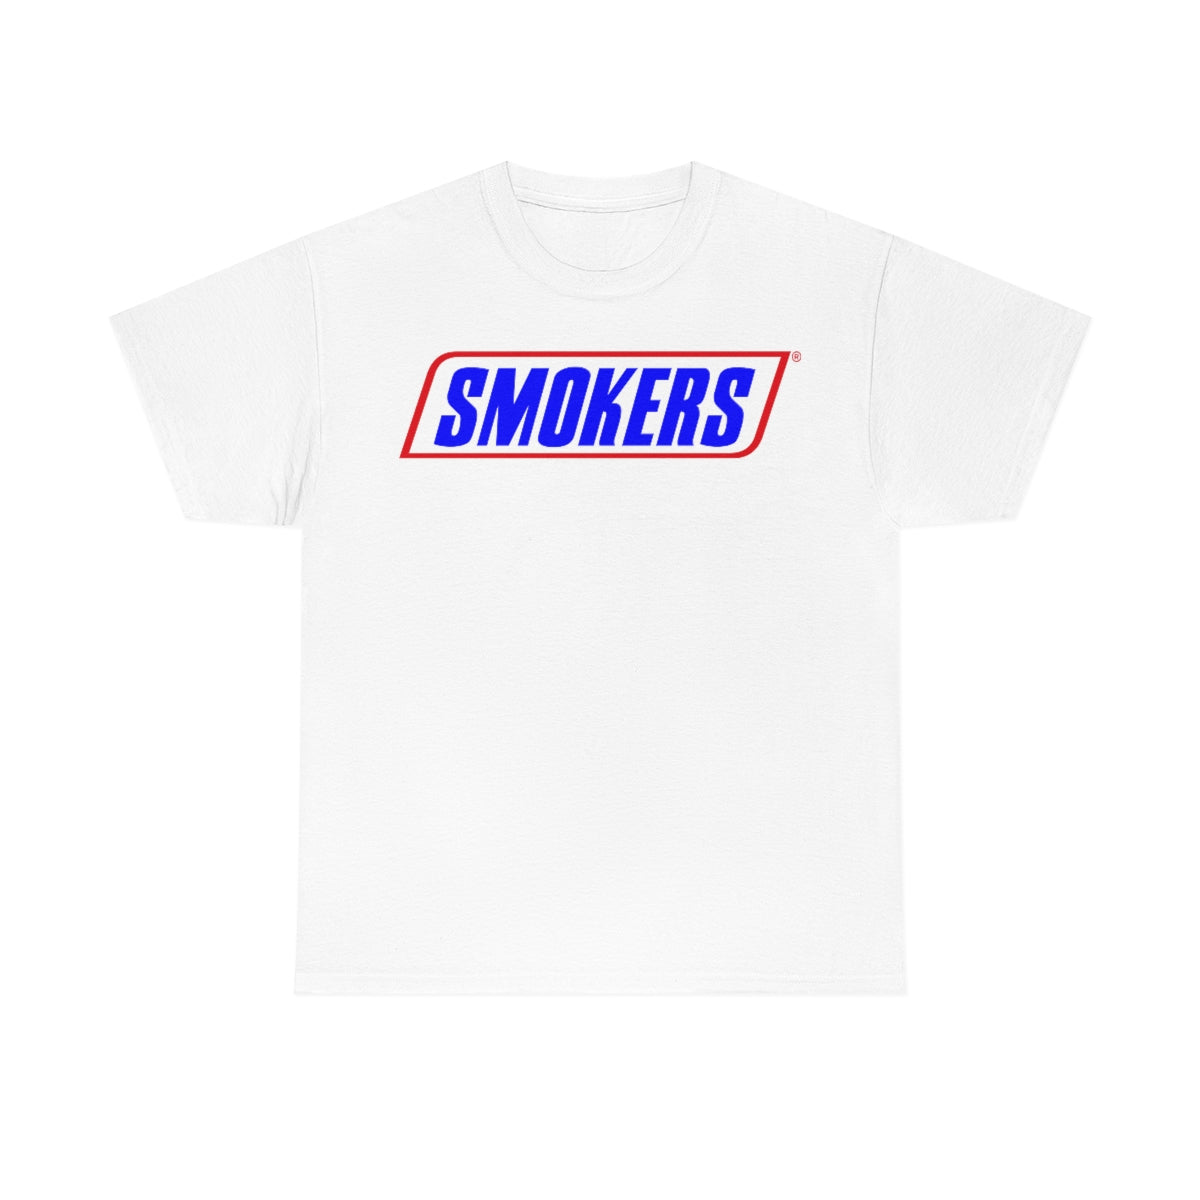 “Smokers” Tshirt